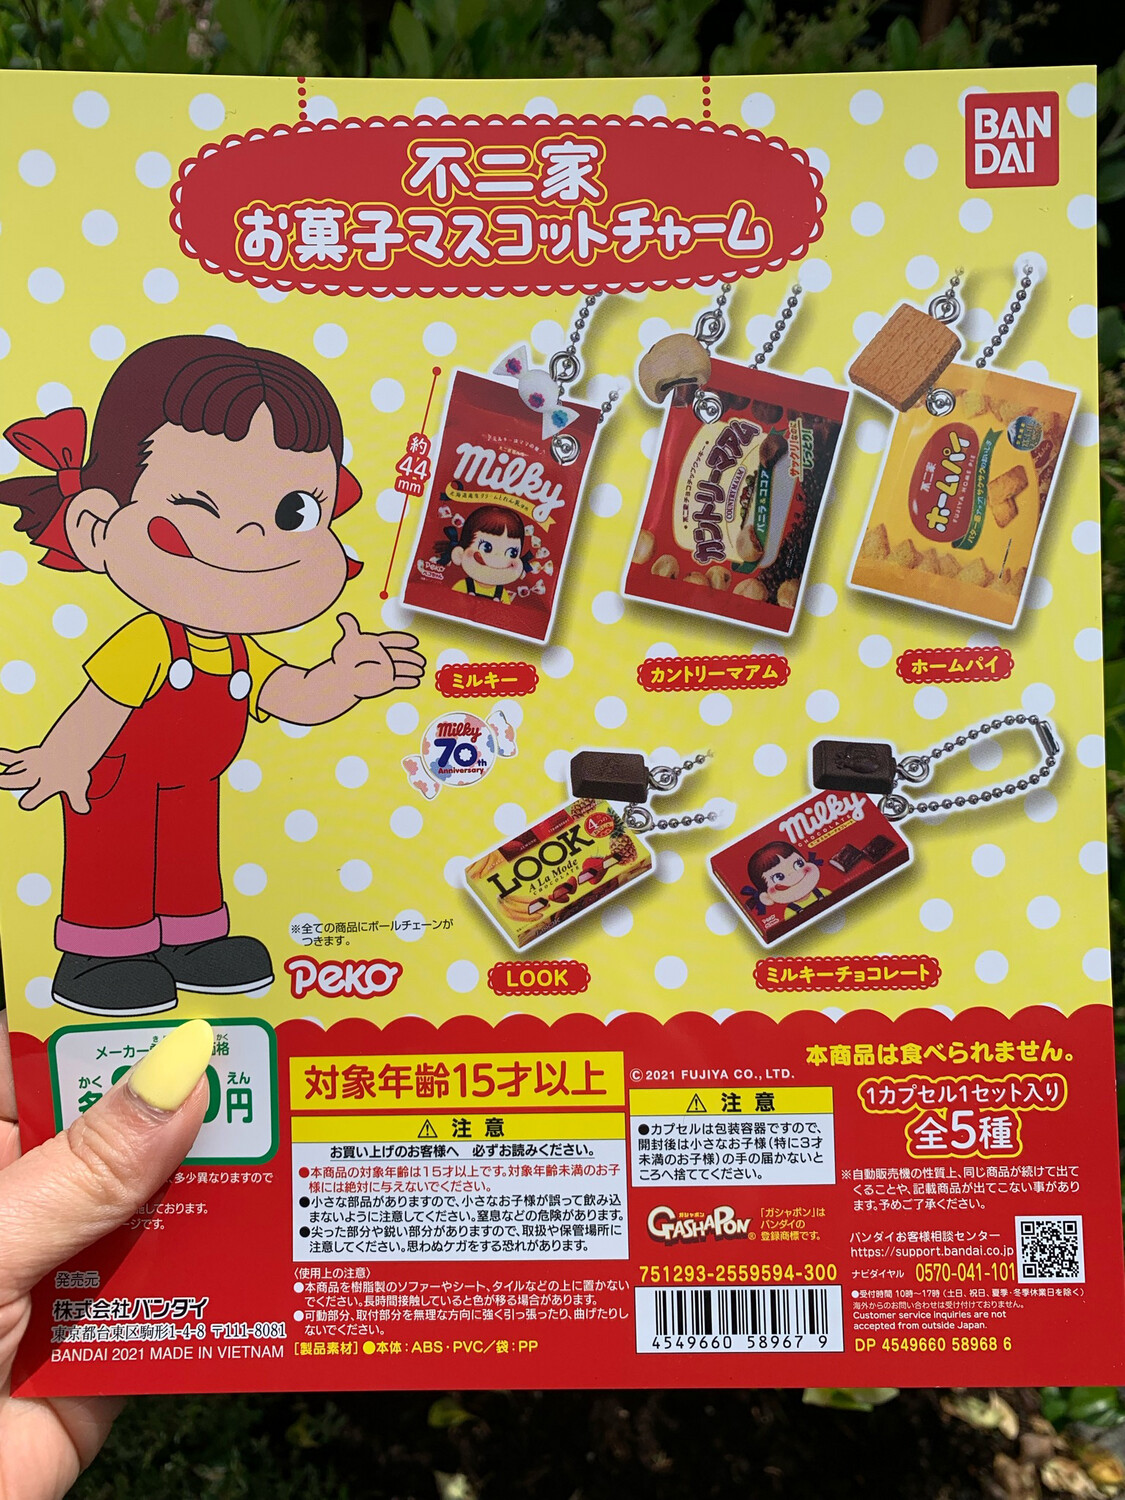 Bandai Peko Chocolate Charm Mascot Gashapon